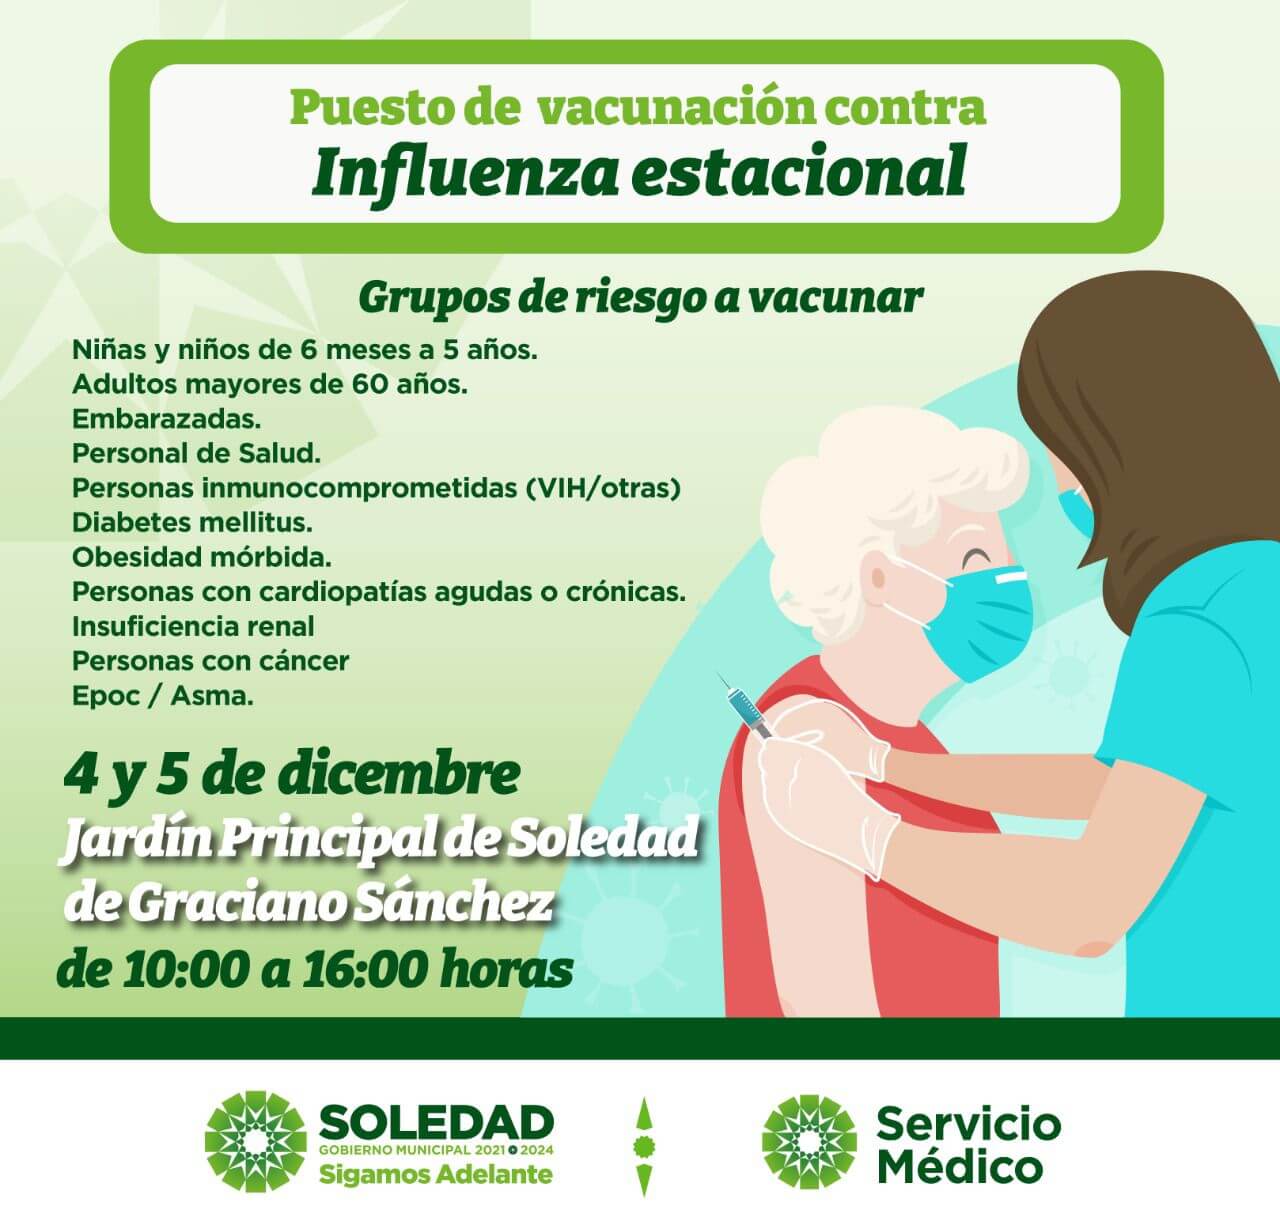 La Plaza Principal de Soledad de Graciano Sánchez será sede de la próxima campaña de vacunación contra la influenza